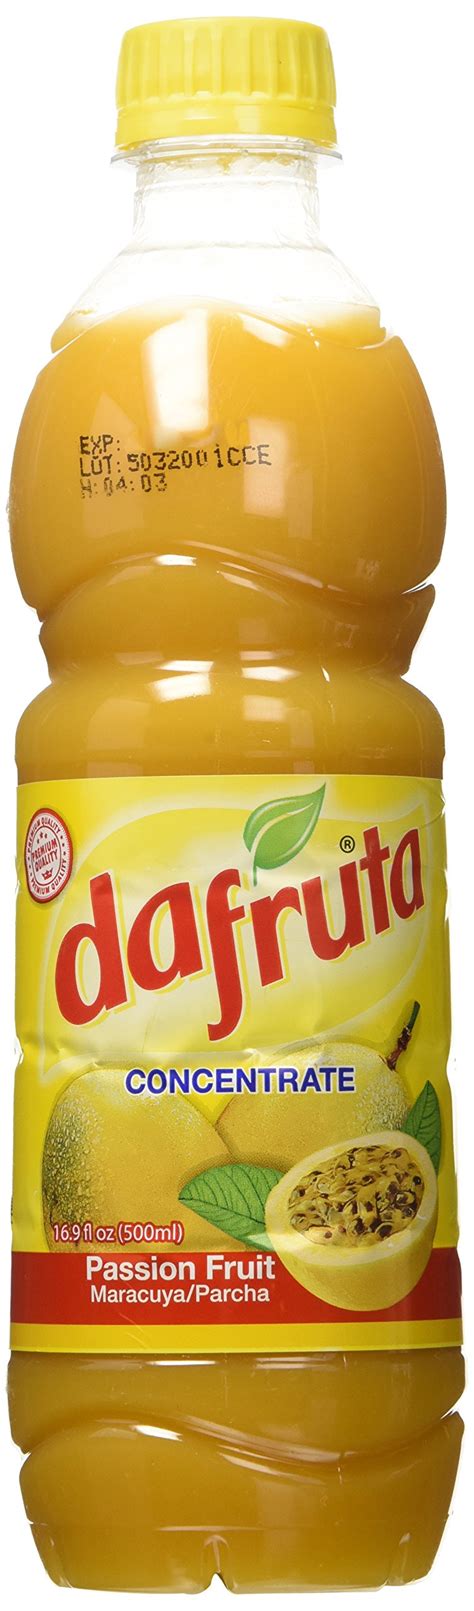 Dafruta Passion Fruit Concentrate Juice Suco De Maracuja Concentrado 16 9 Fl Oz 500ml